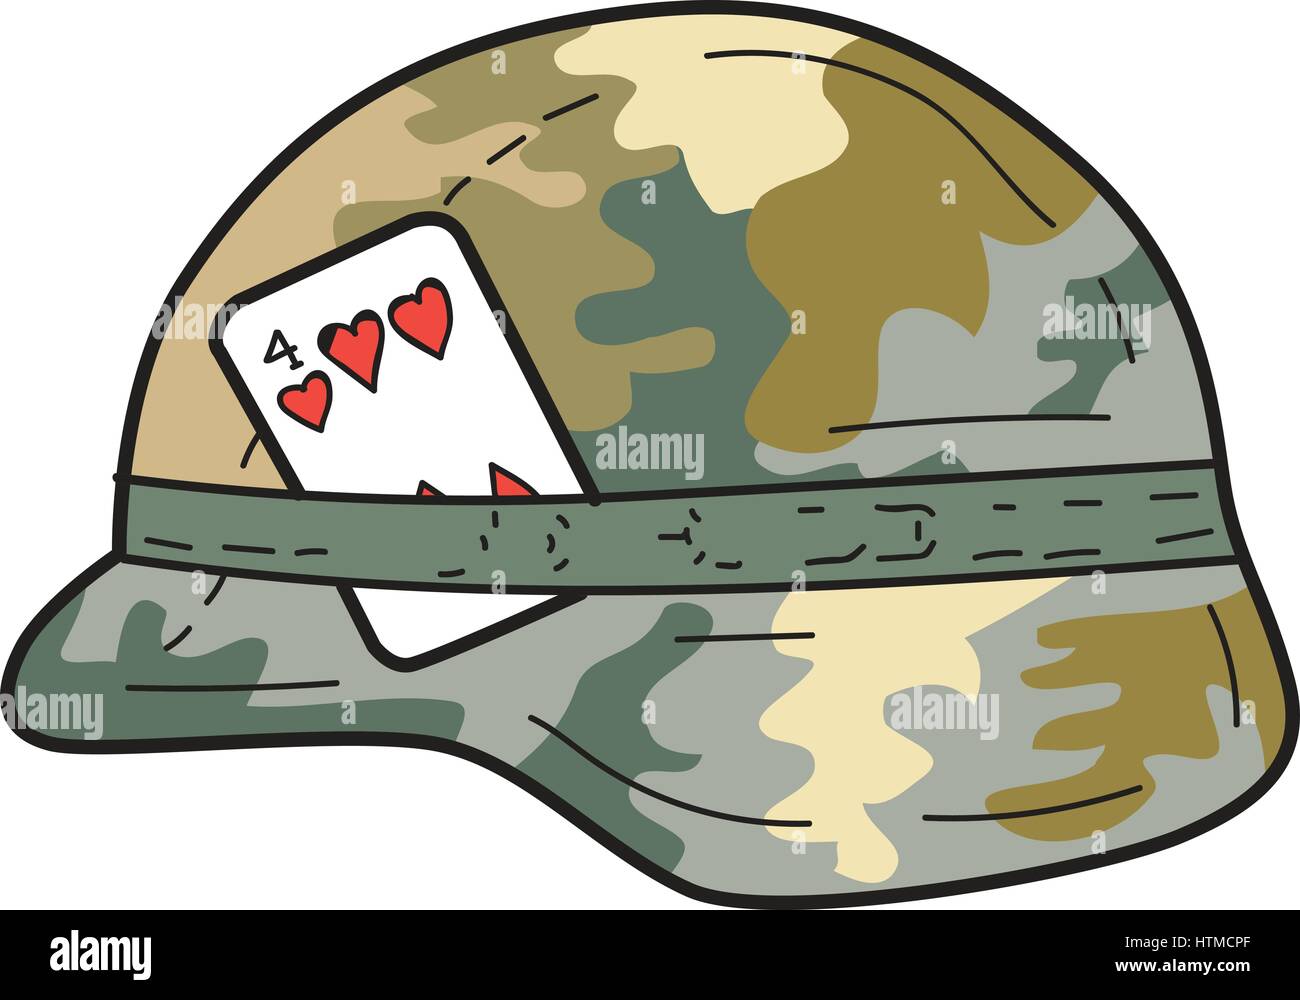 Zeichnung Skizze Stil Illustration einer uns Armee Kevlar Bekämpfung Helm mit Camouflage Tuch abdecken und vier Herzen Spielkarte an Seite befestigt set o Stock Vektor